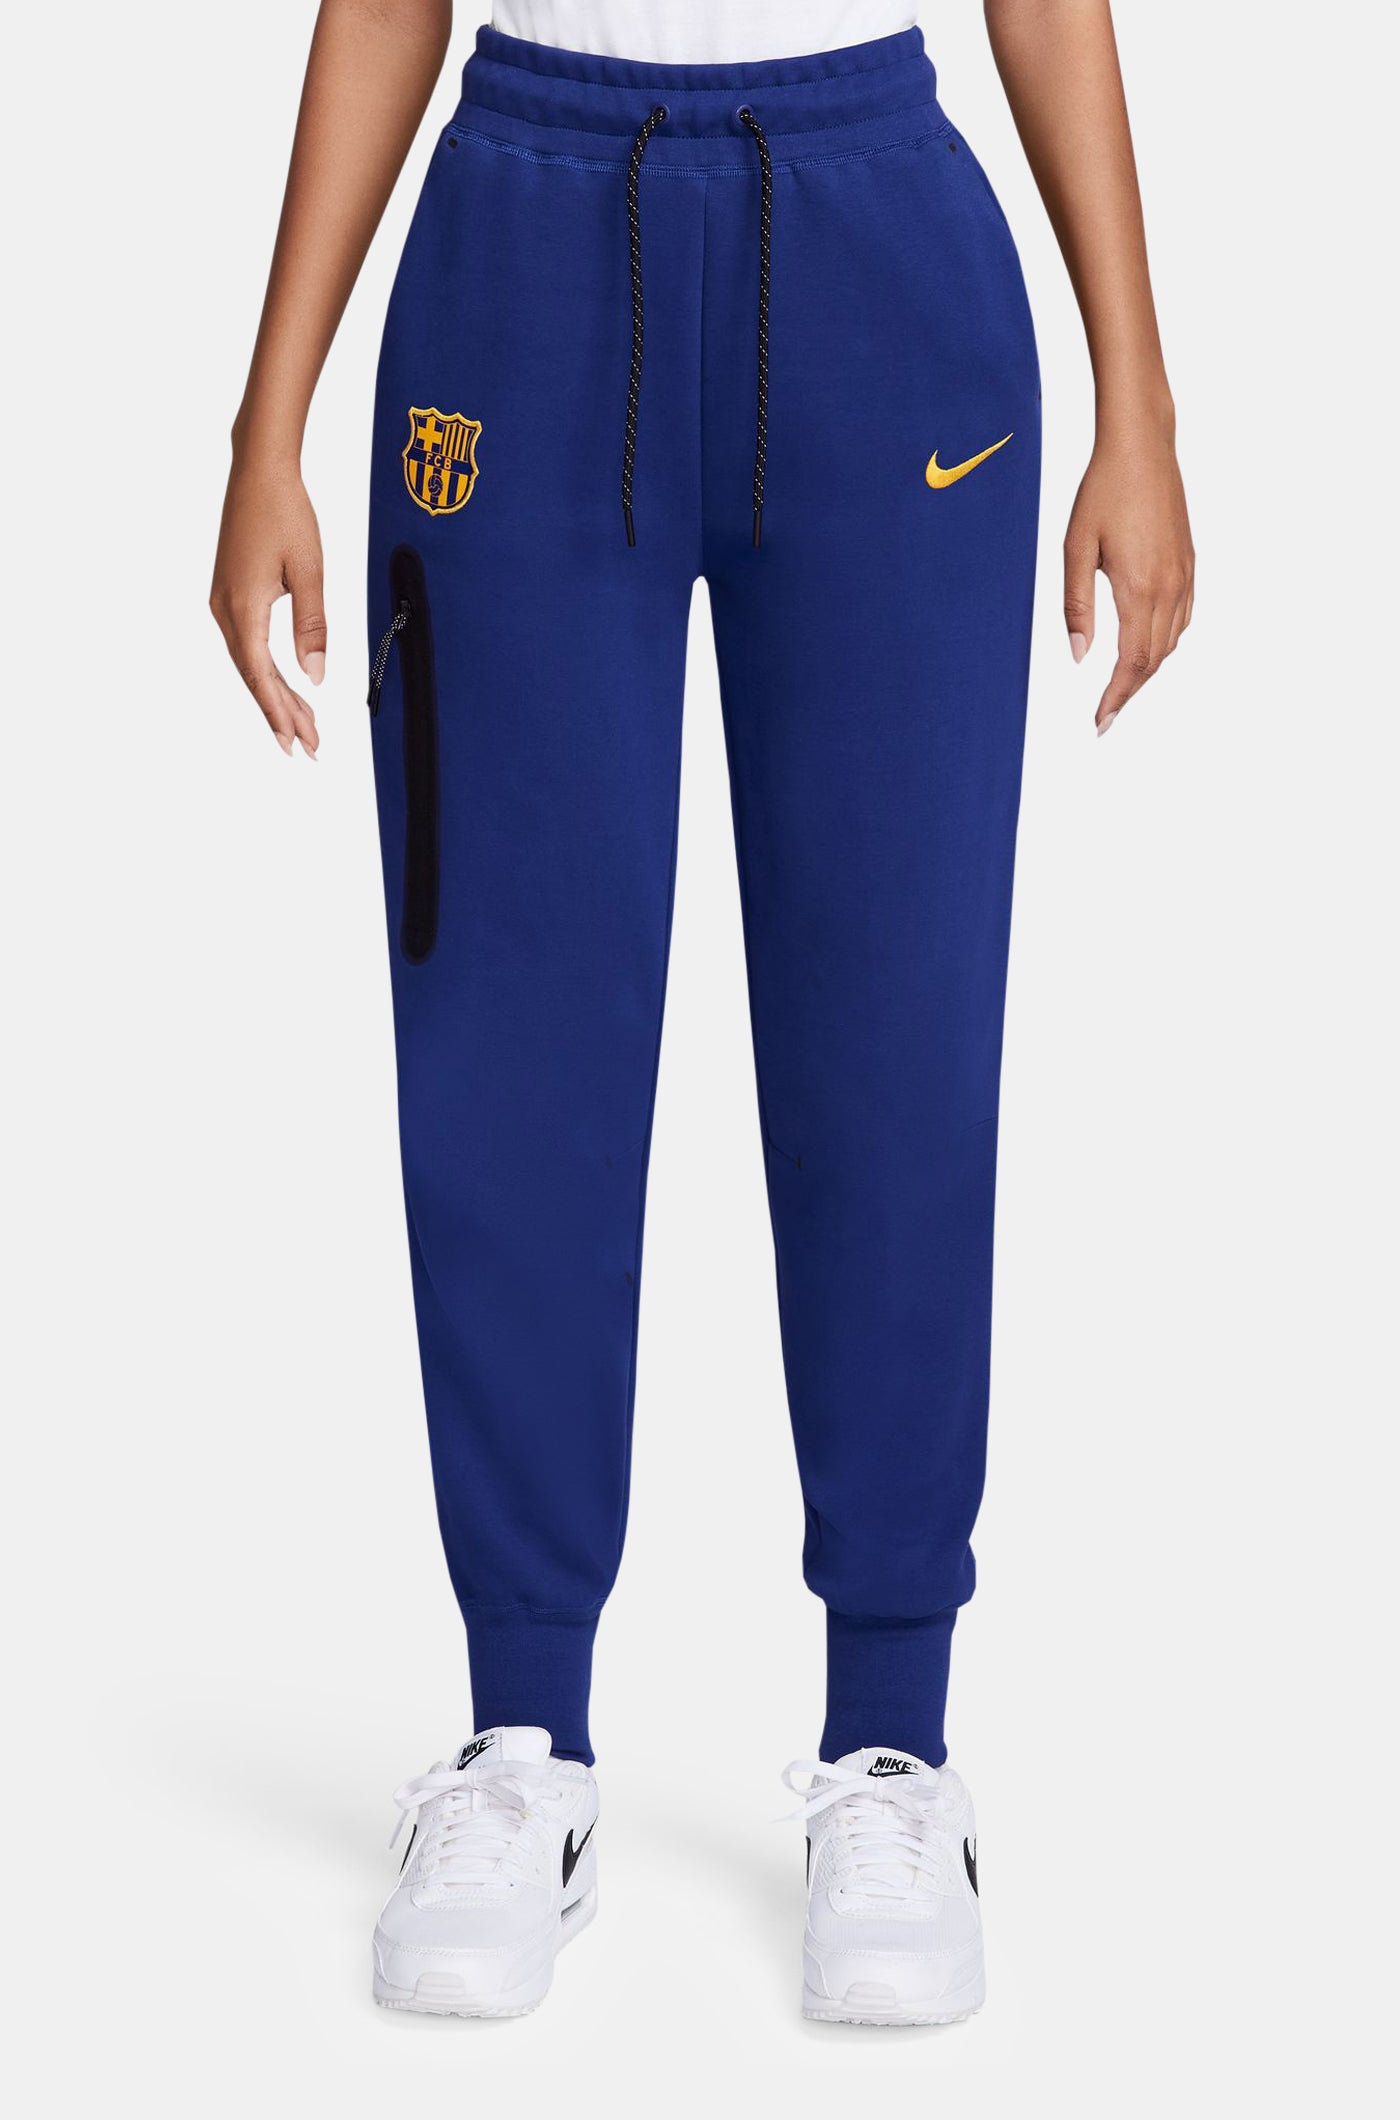 Tech pant blue royal Barça Nike - Women's